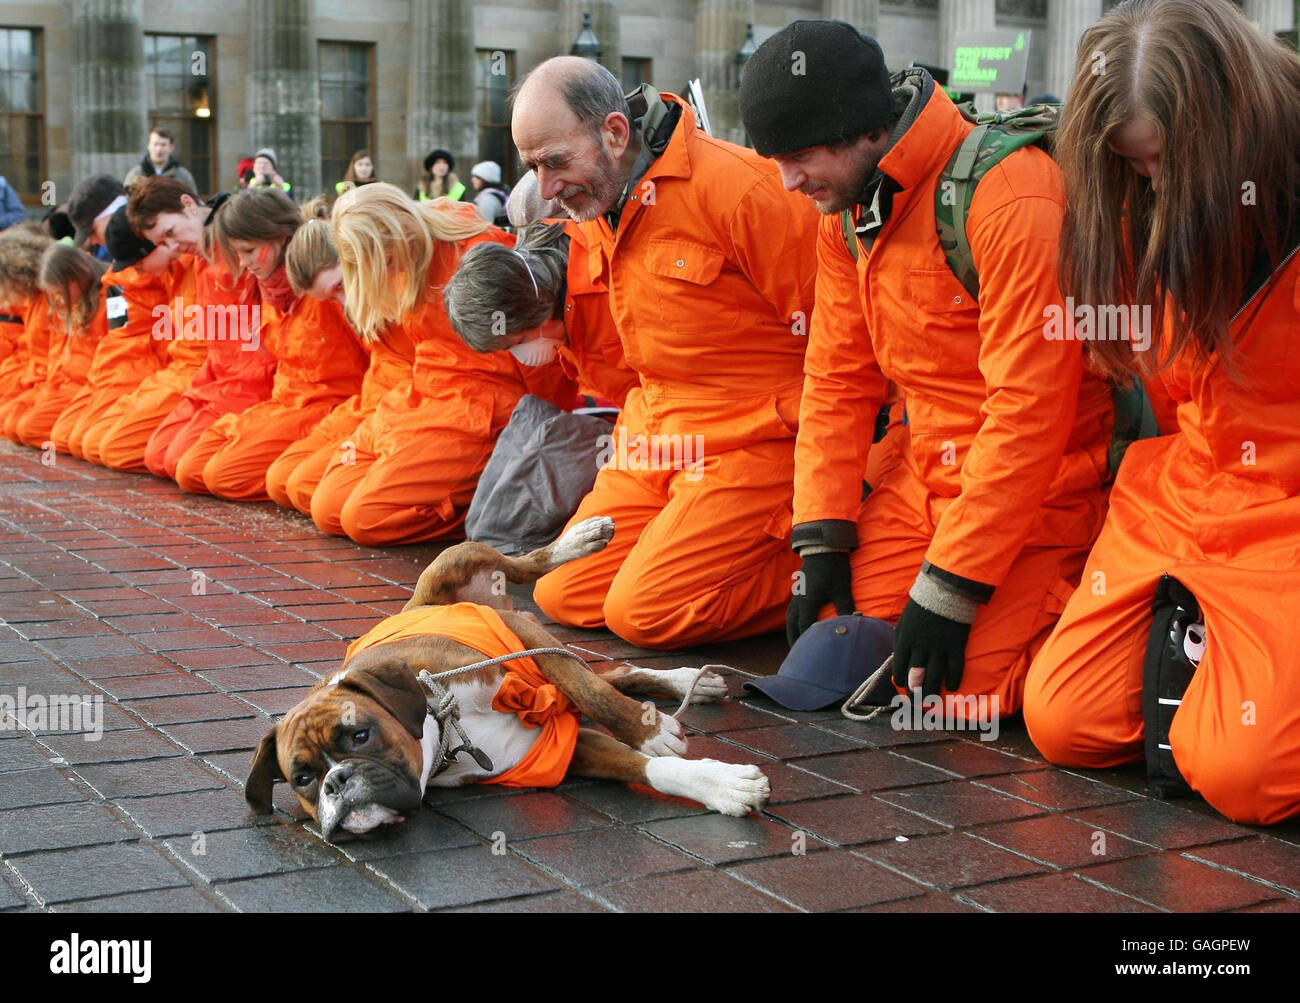 Les manifestants s'agenouillent dans une ligne sur Princes Street, à Édimbourg, appelant à la fermeture de la baie de Guantanamo à l'occasion du sixième anniversaire de l'arrivée des premiers détenus. Banque D'Images